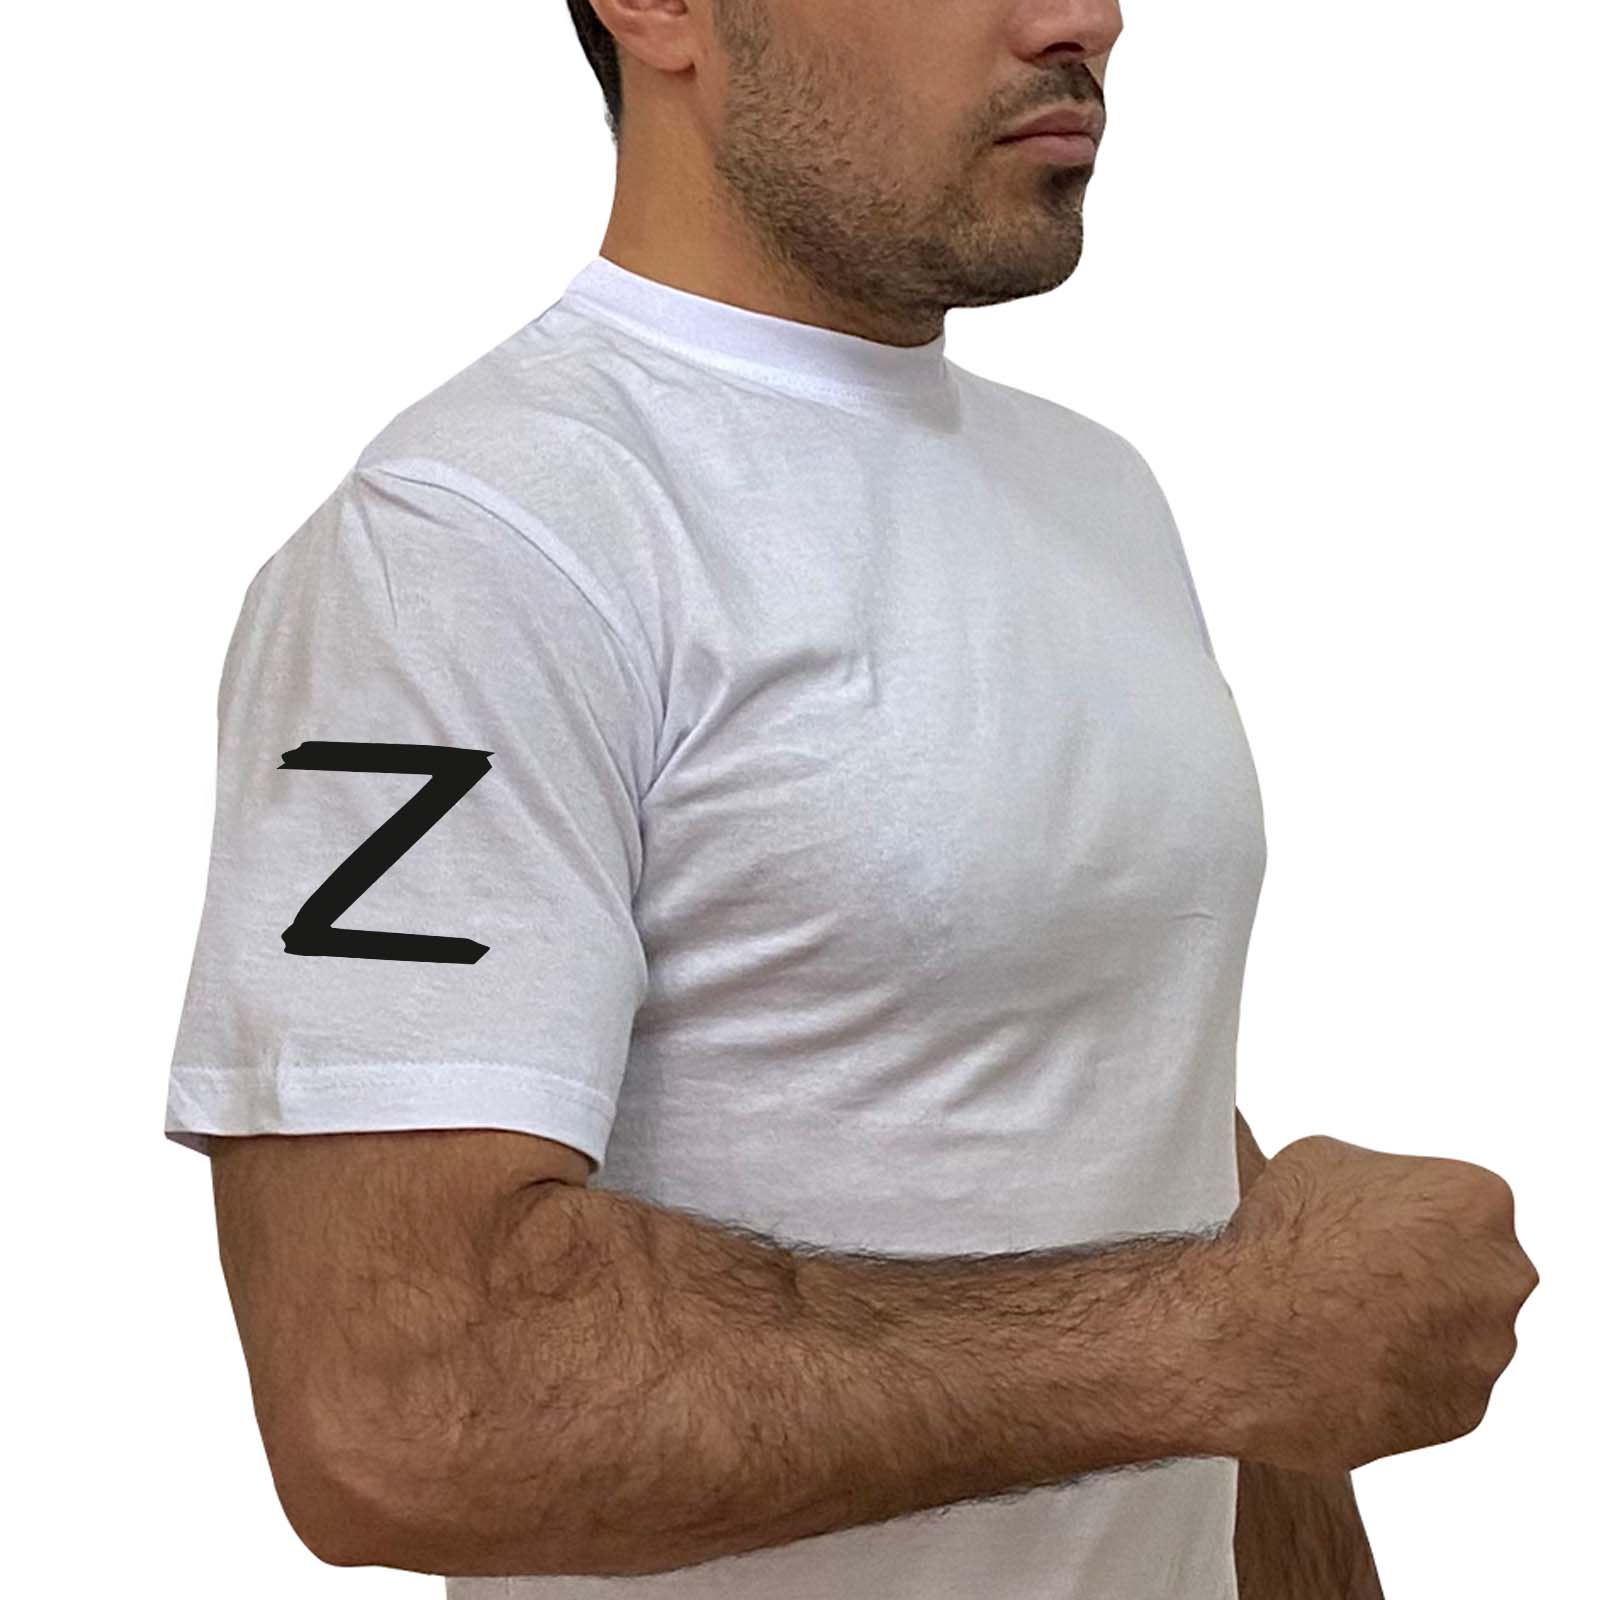 Купить белую футболку с надписью Z на рукаве